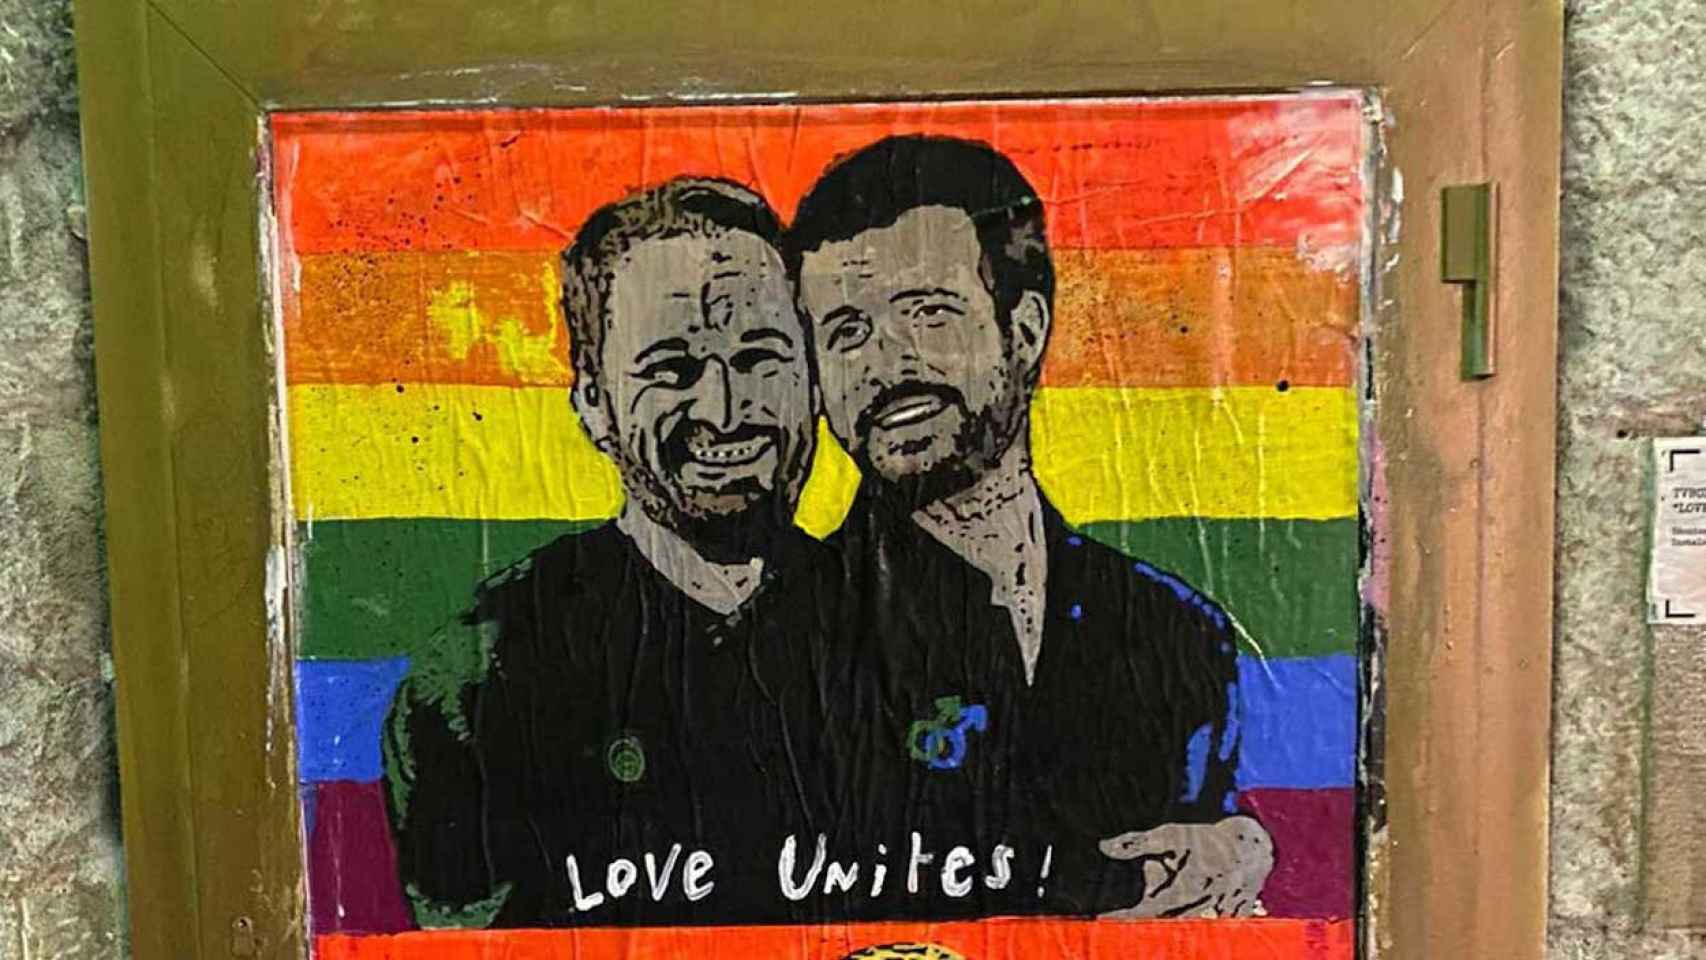 Santiago Abascal y Pablo Casado en el grafiti del orgullo gay del artista urbano Tvboy / TVBOY vía Instagram